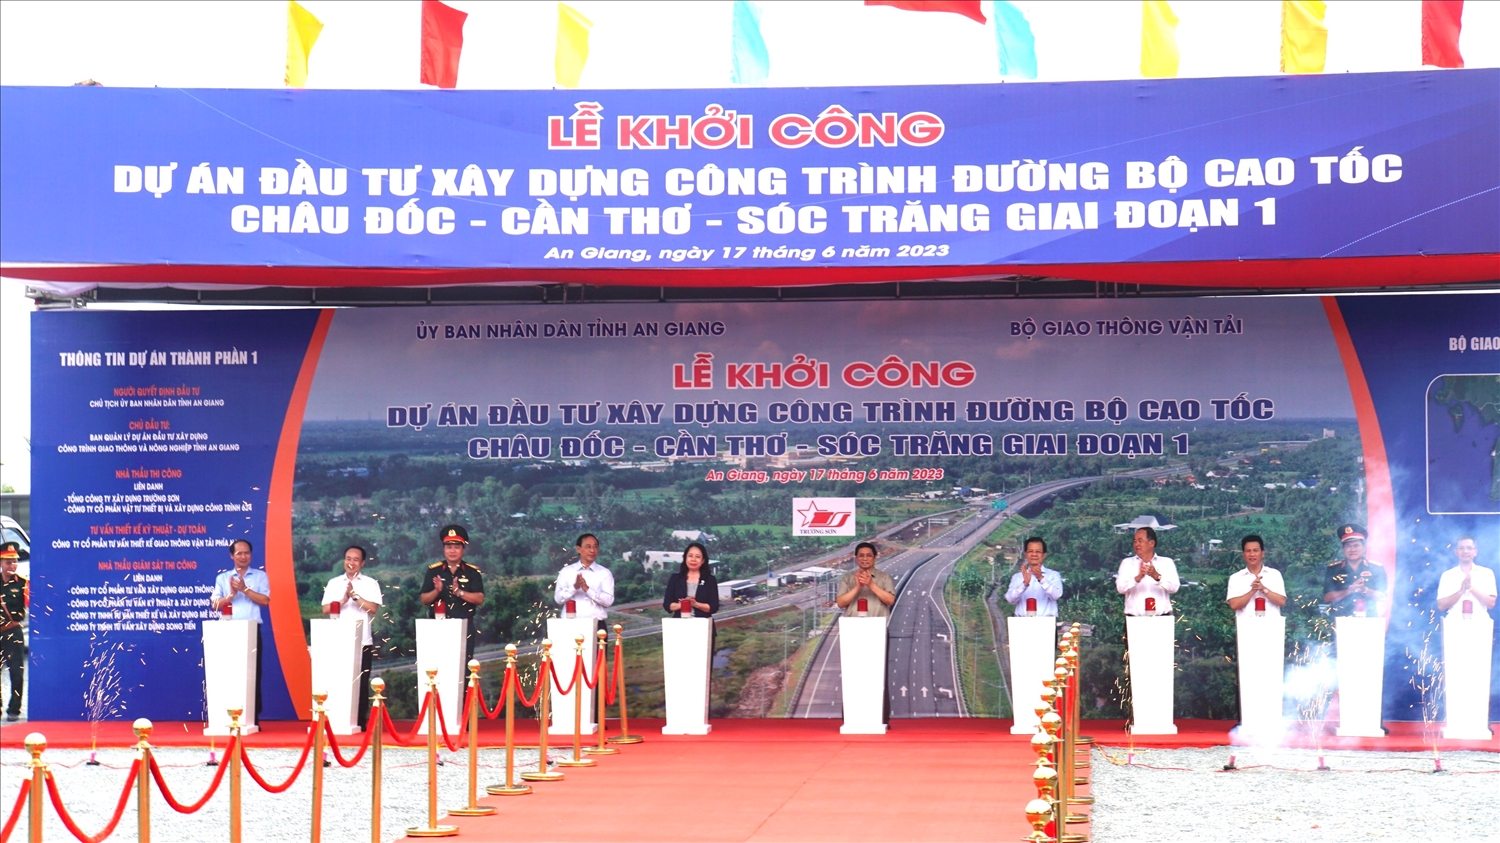 Thủ tướng Chính phủ Phạm Minh Chính phát lệnh chính thức khởi công Dự án đầu tư xây dựng công trình đường bộ cao tốc Châu Đốc - Cần Thơ - Sóc Trăng giai đoạn 1 